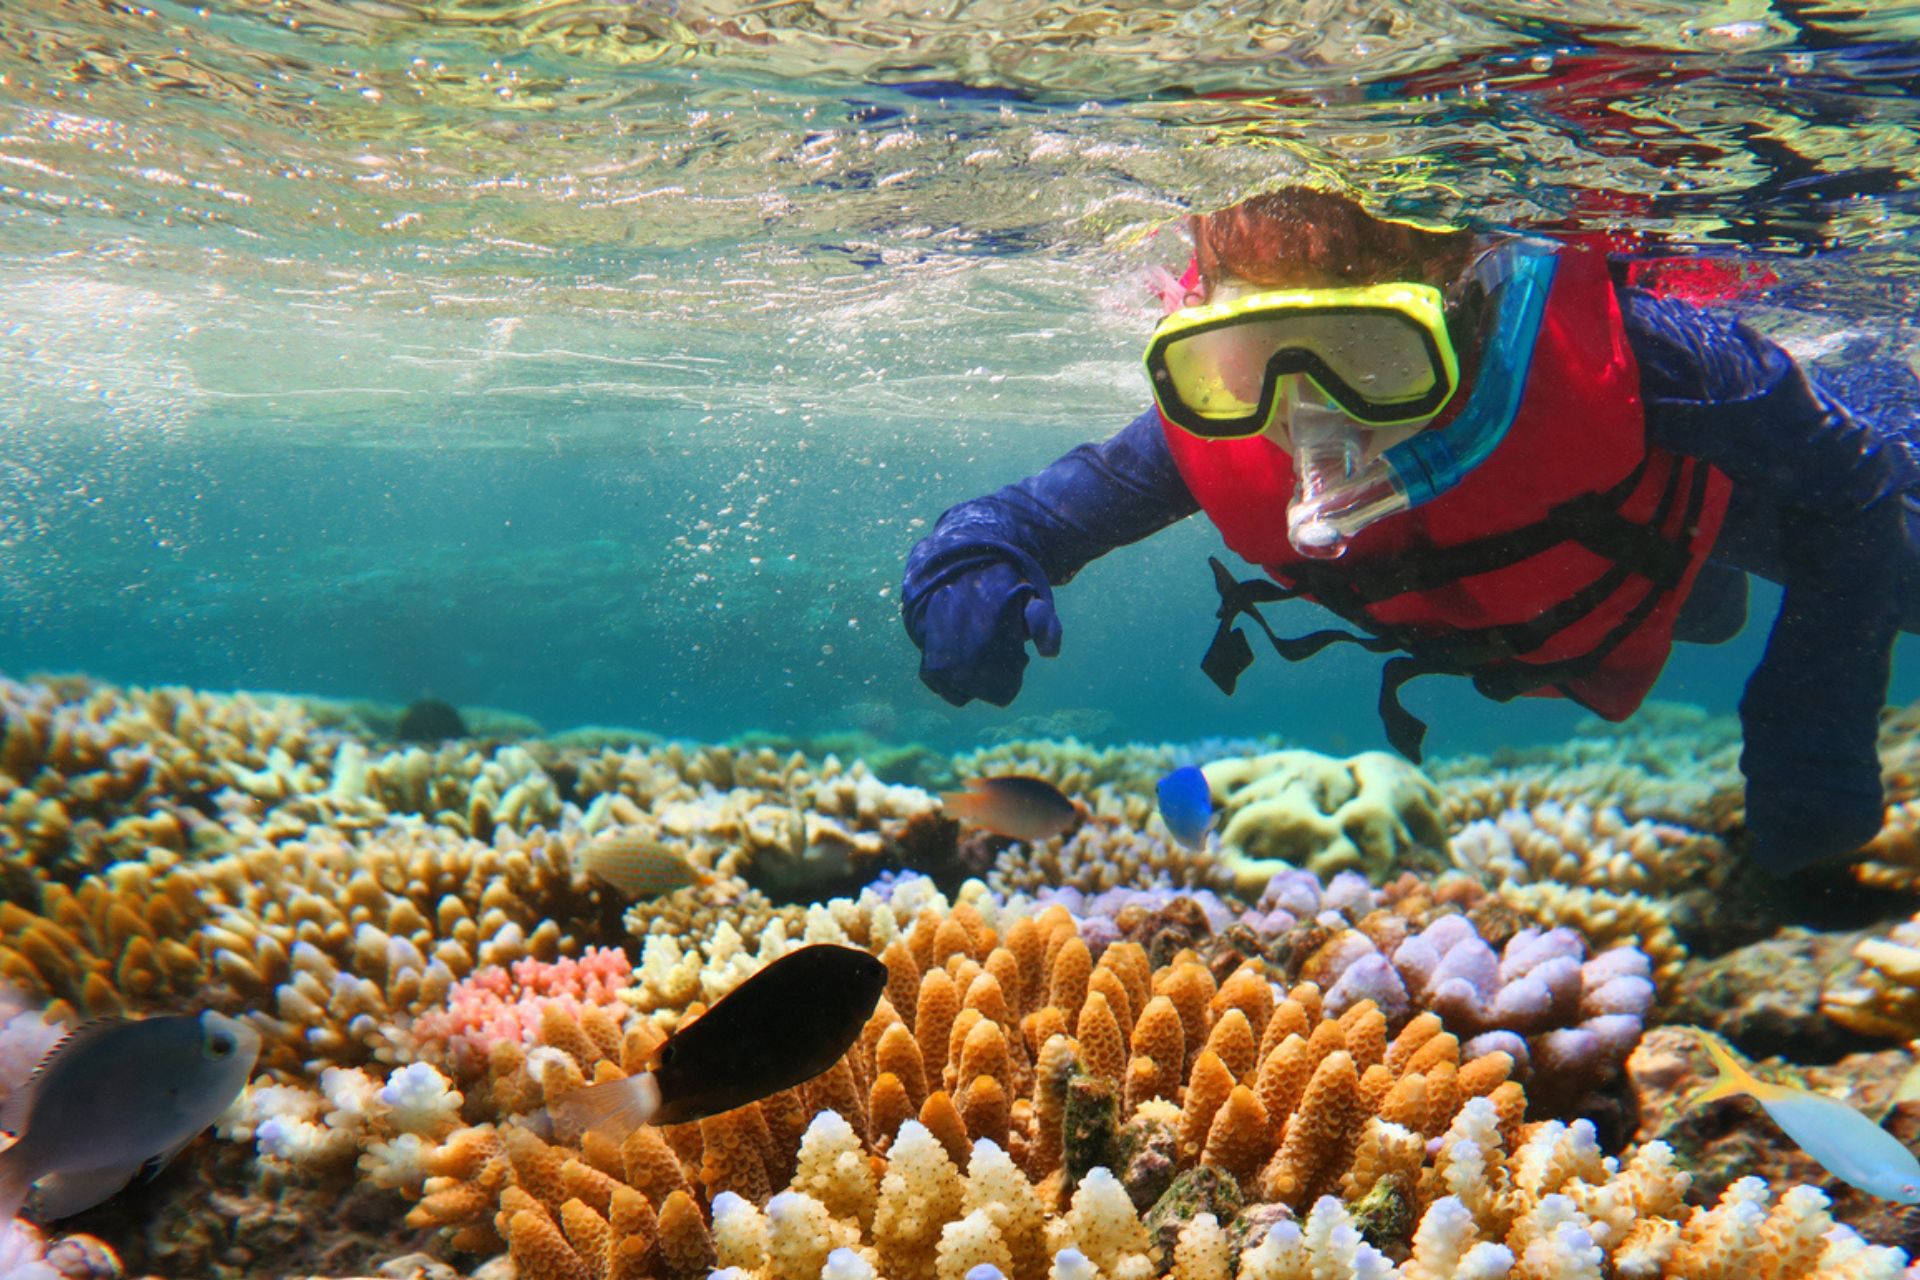 Grande barriera corallina: un sub la esplora